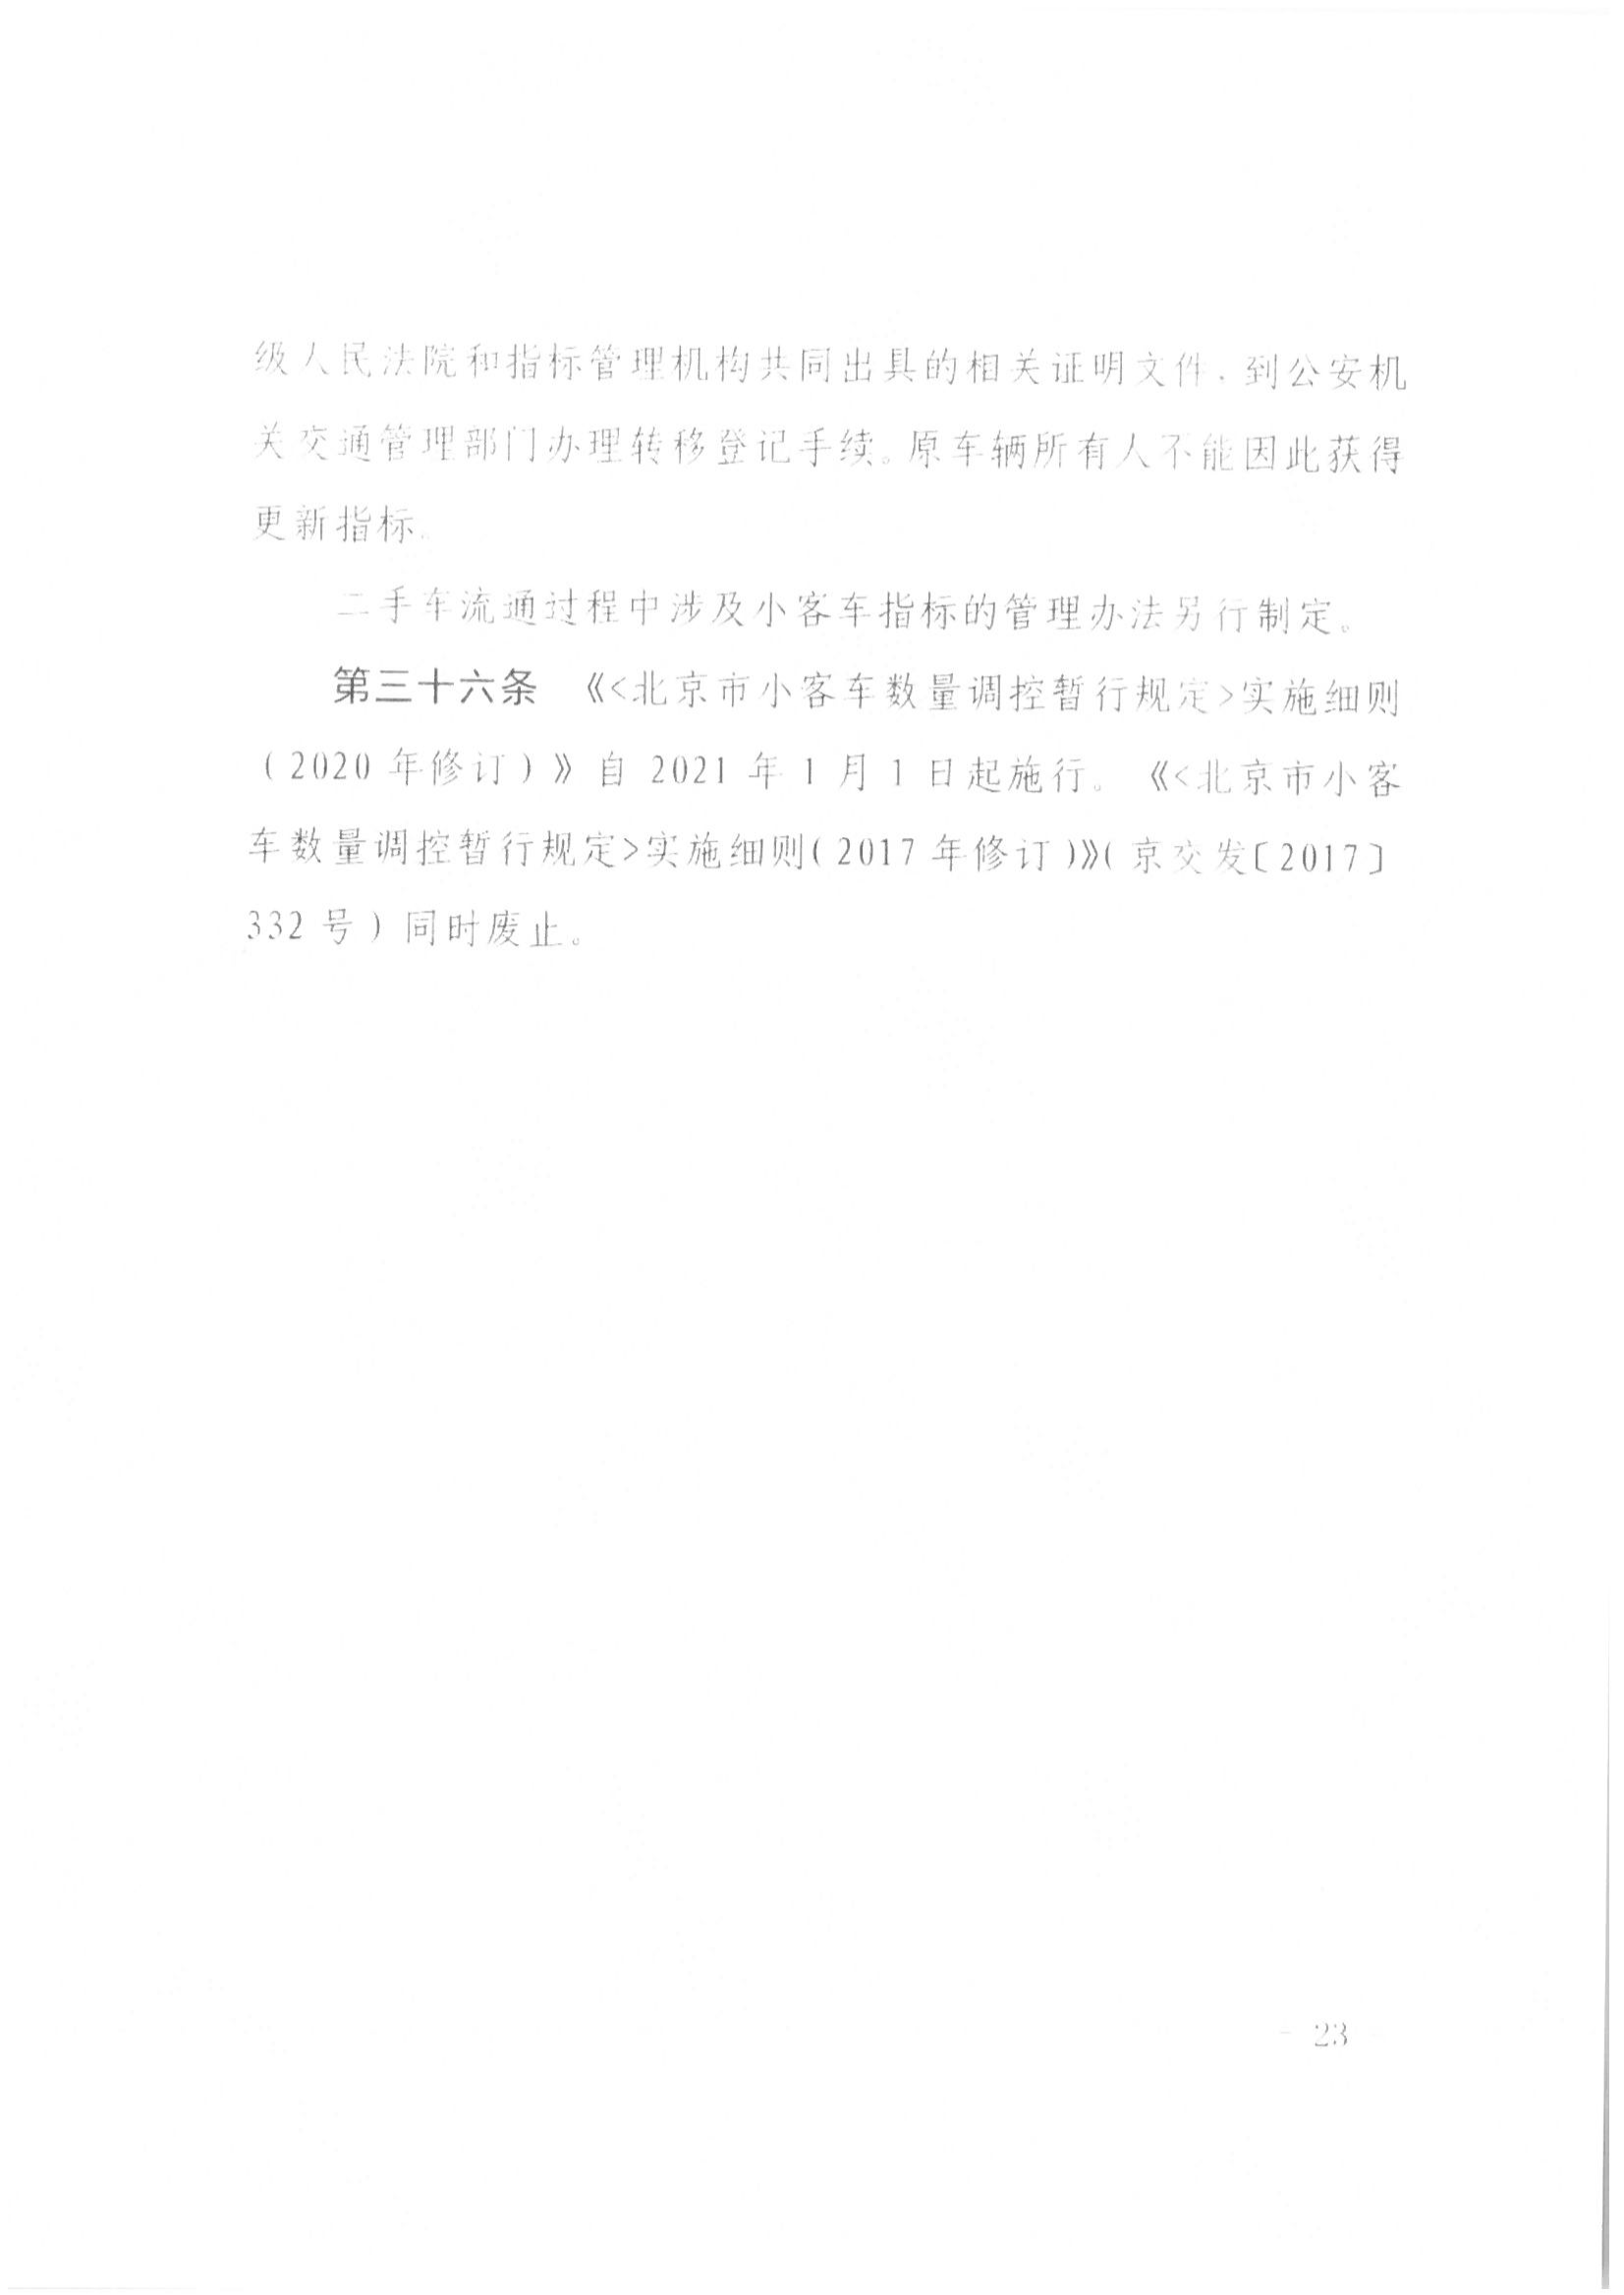 京公协字【2021】21号 北京市公证协会规范执业指引【第13号】_46